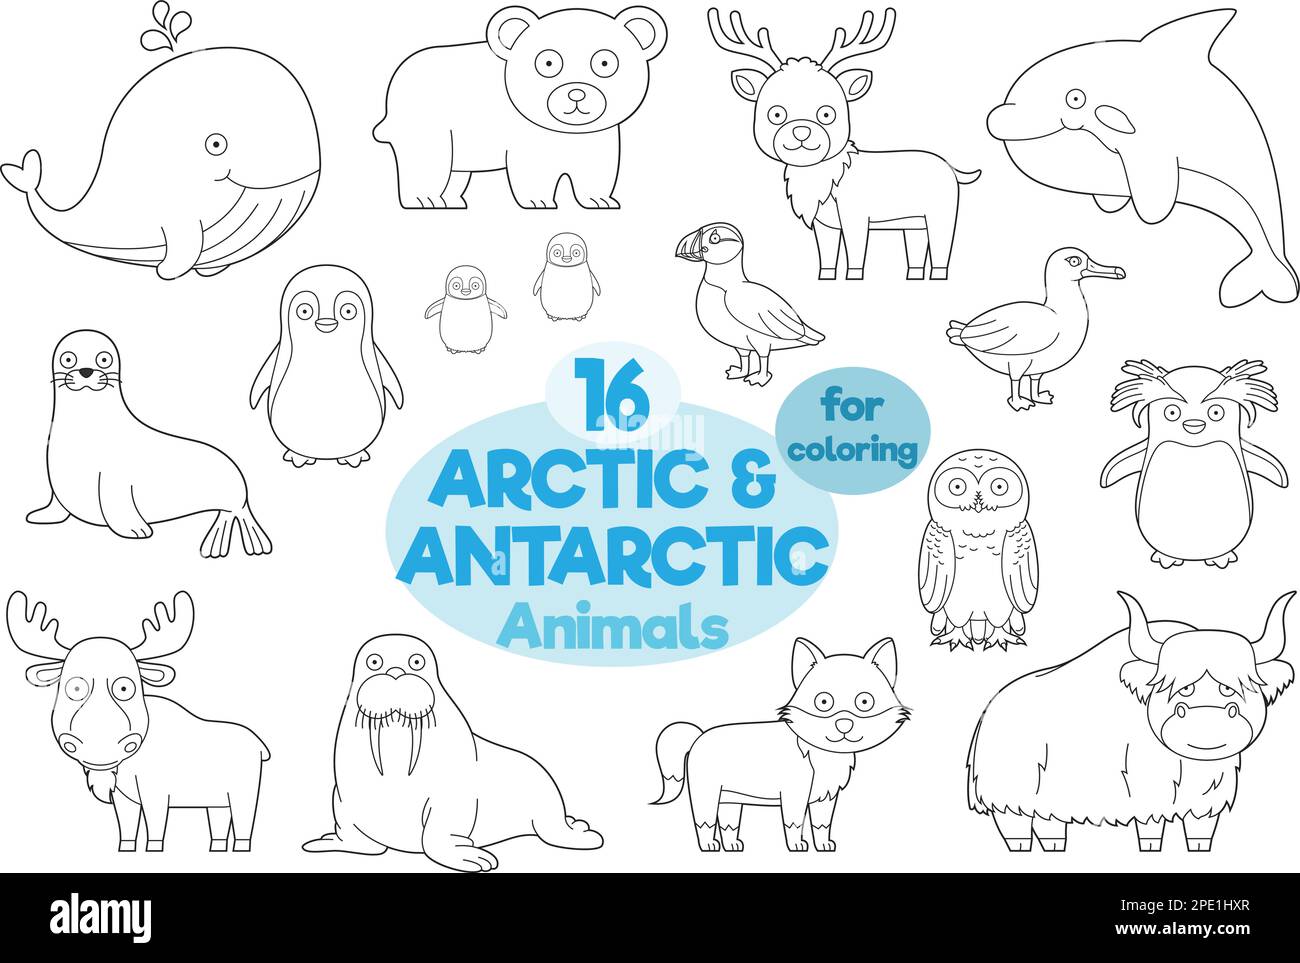 Ensemble de 16 animaux arctiques et antarctiques à colorier dans le style de dessin animé Illustration vectorielle Illustration de Vecteur